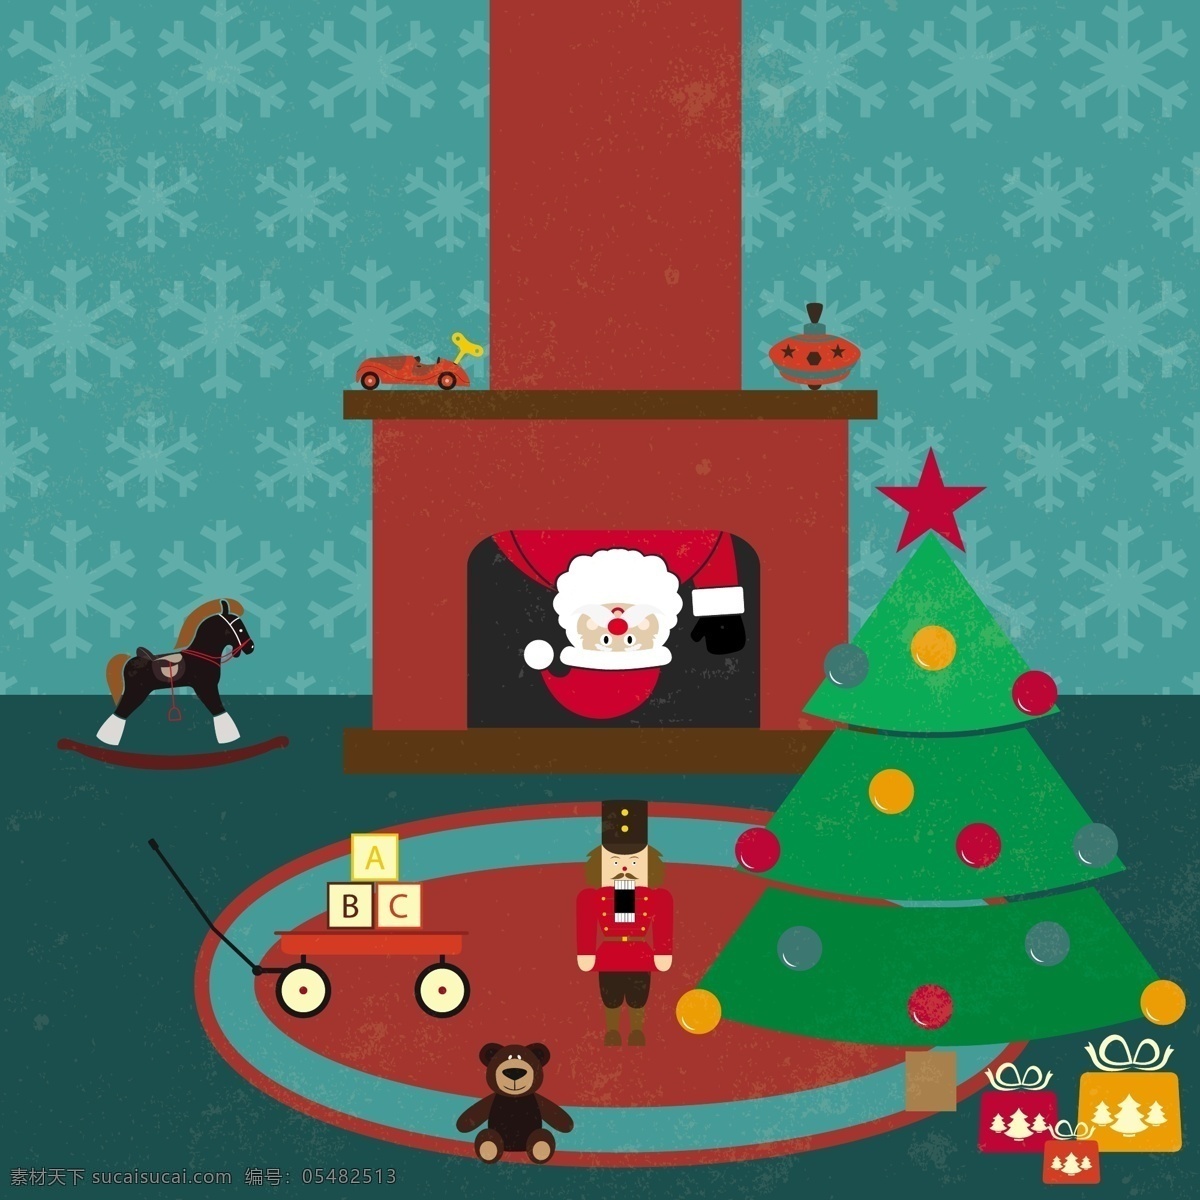 可爱 钻 壁炉 圣诞老人 插画 玩具车 木马椅子 圣诞树 玩具锡兵 礼物 礼盒 烟囱 圣诞节 积木 玩偶熊 文化艺术 节日庆祝